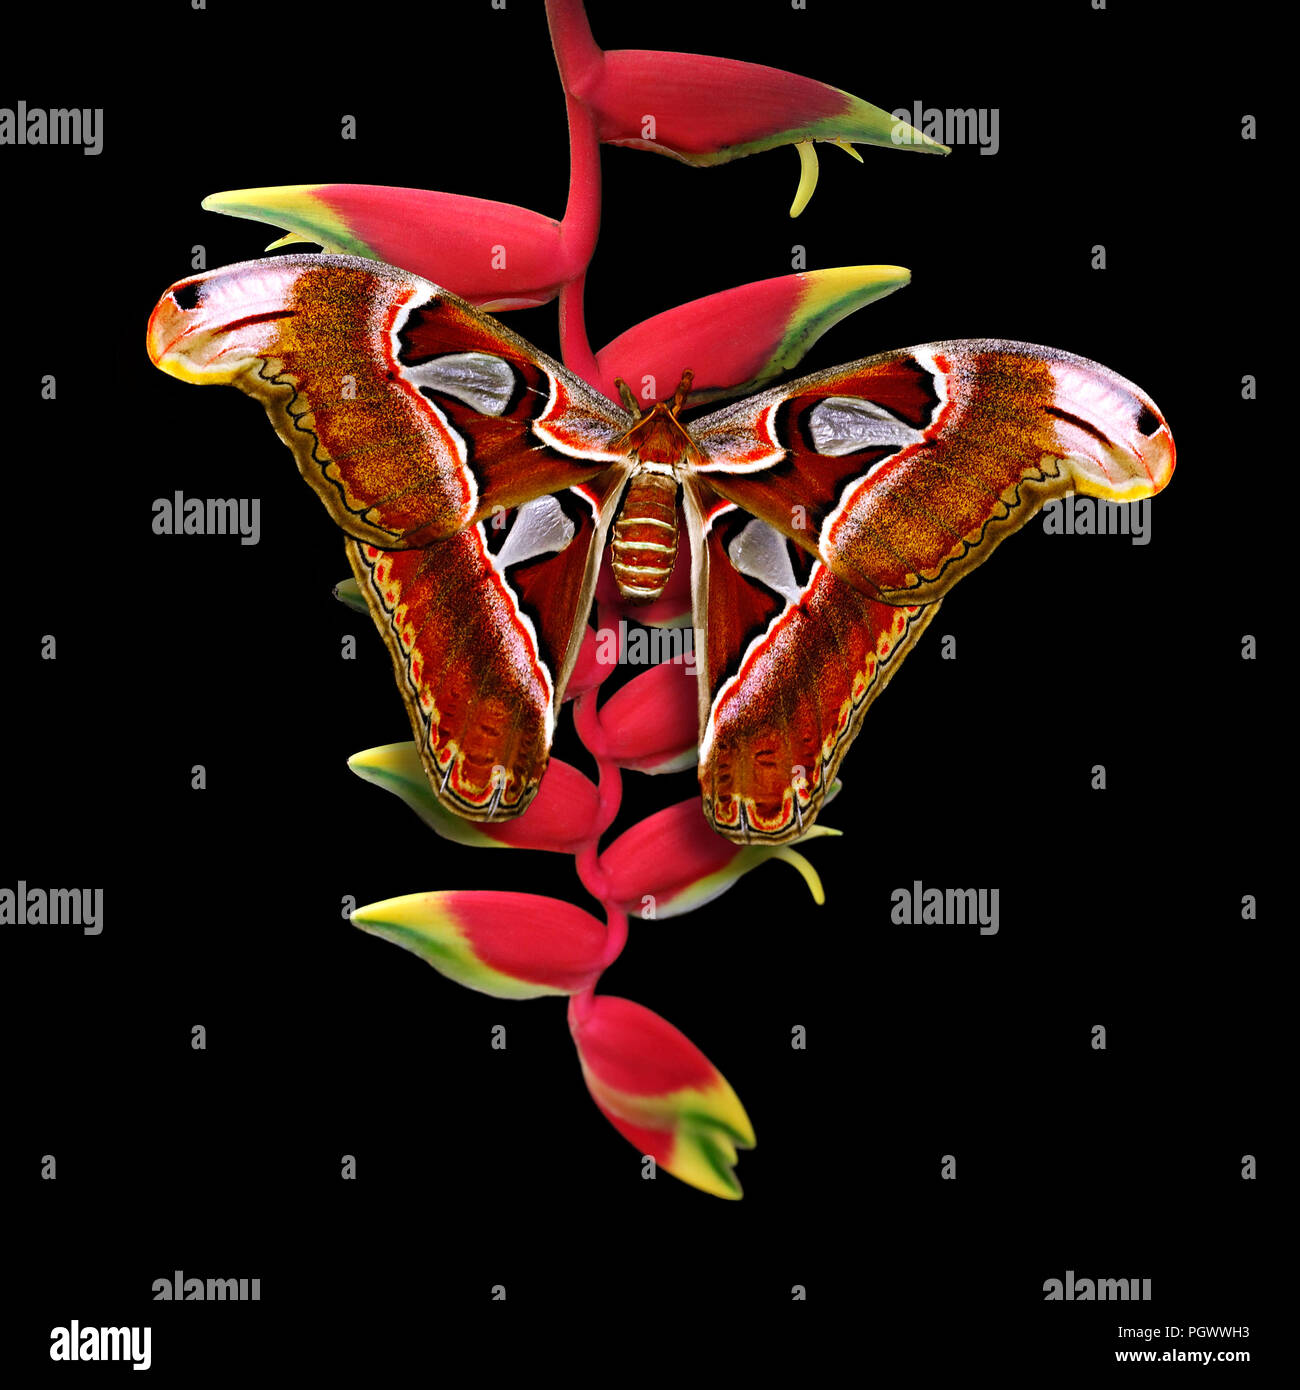 Atlas moth - Butterfly Attacus atlas en flor heliconia rostrate o ave del paraíso o colgar lobster claw aislado sobre fondo negro Foto de stock